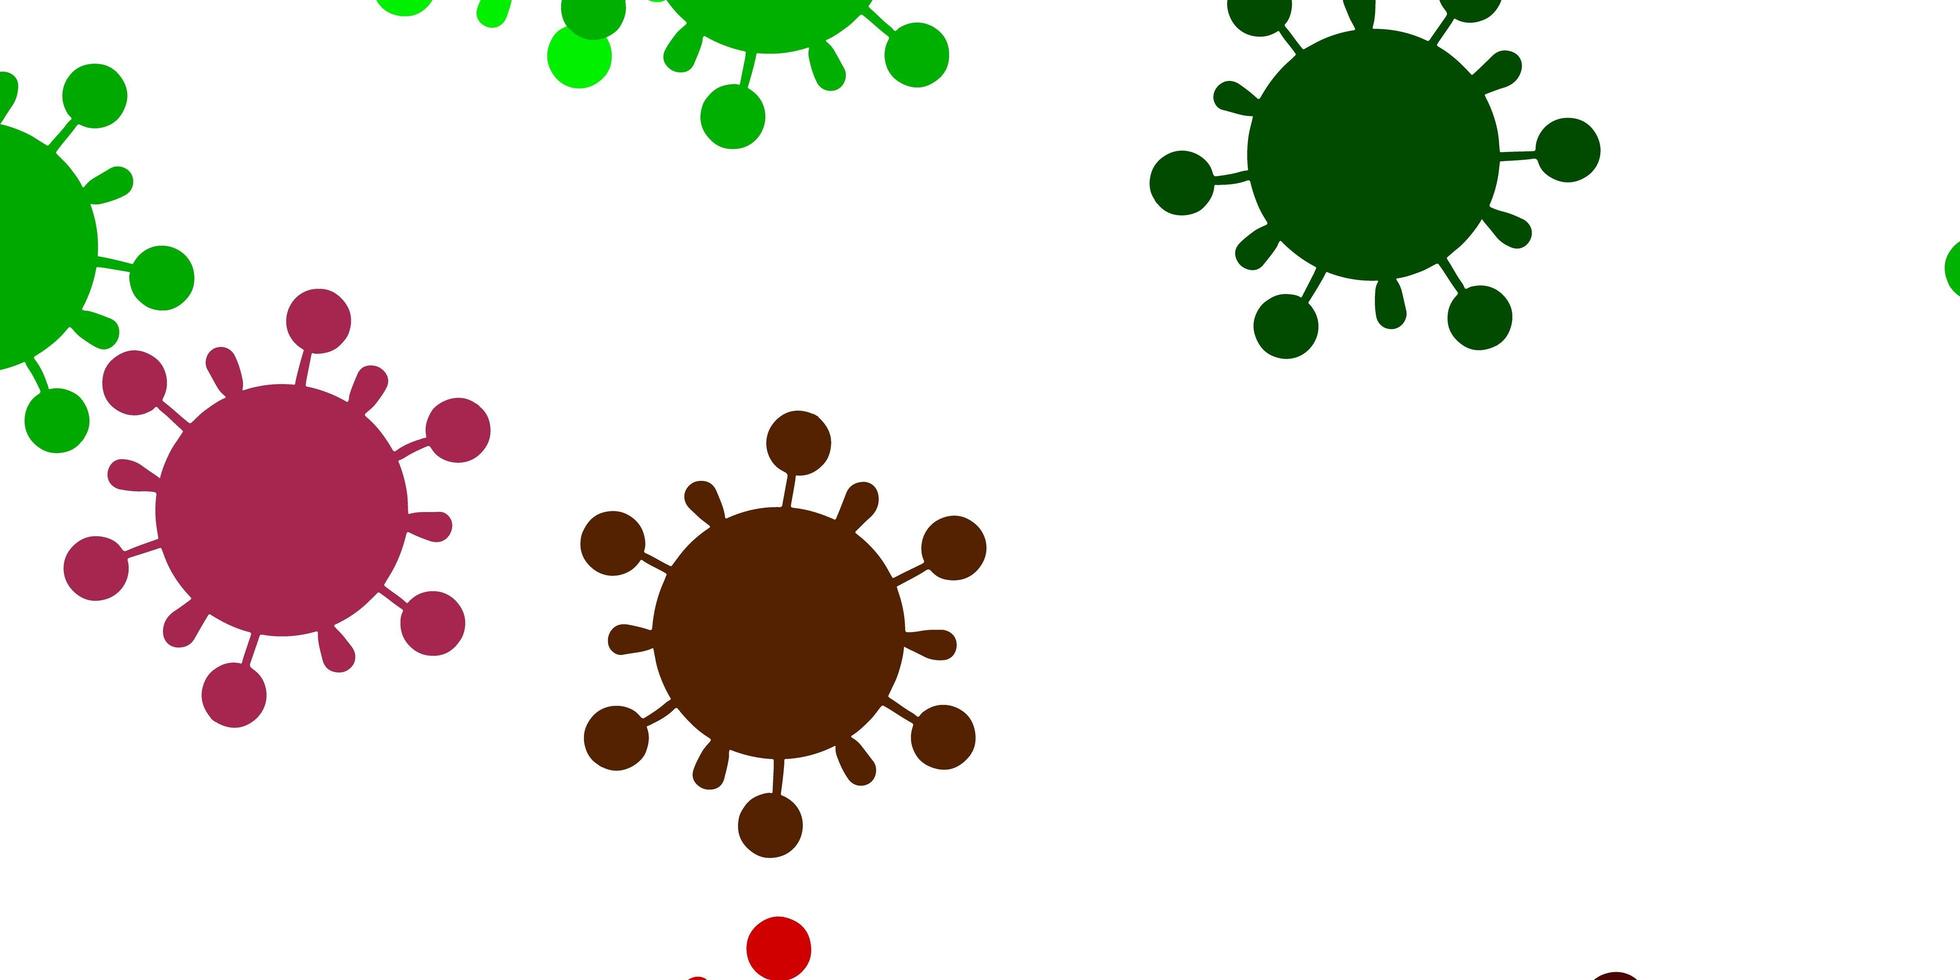 modèle de vecteur vert clair, rouge avec des signes de grippe.